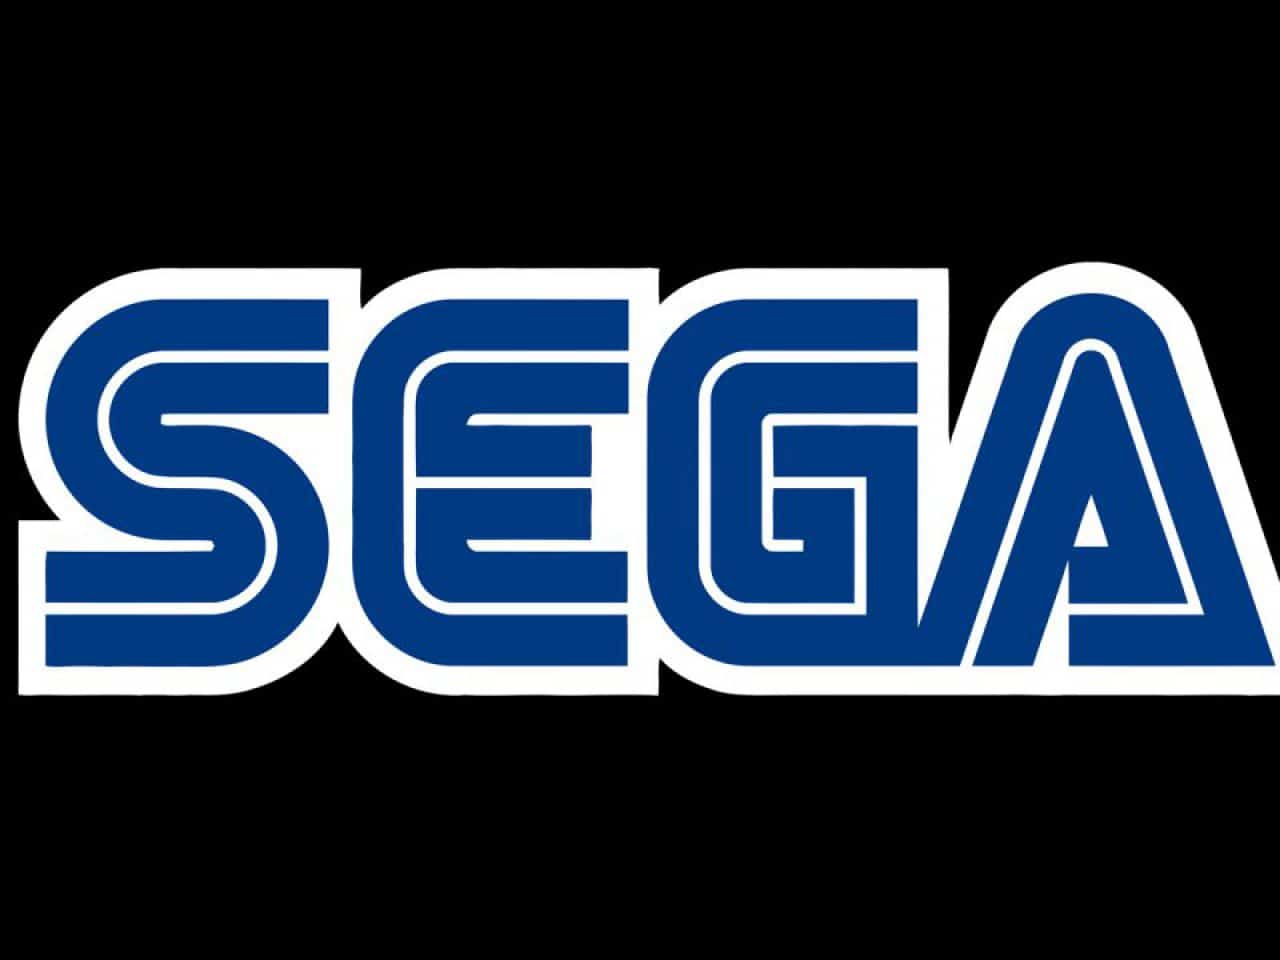 Sega decide di portare altri giochi, vecchi e nuovi, su PC 2